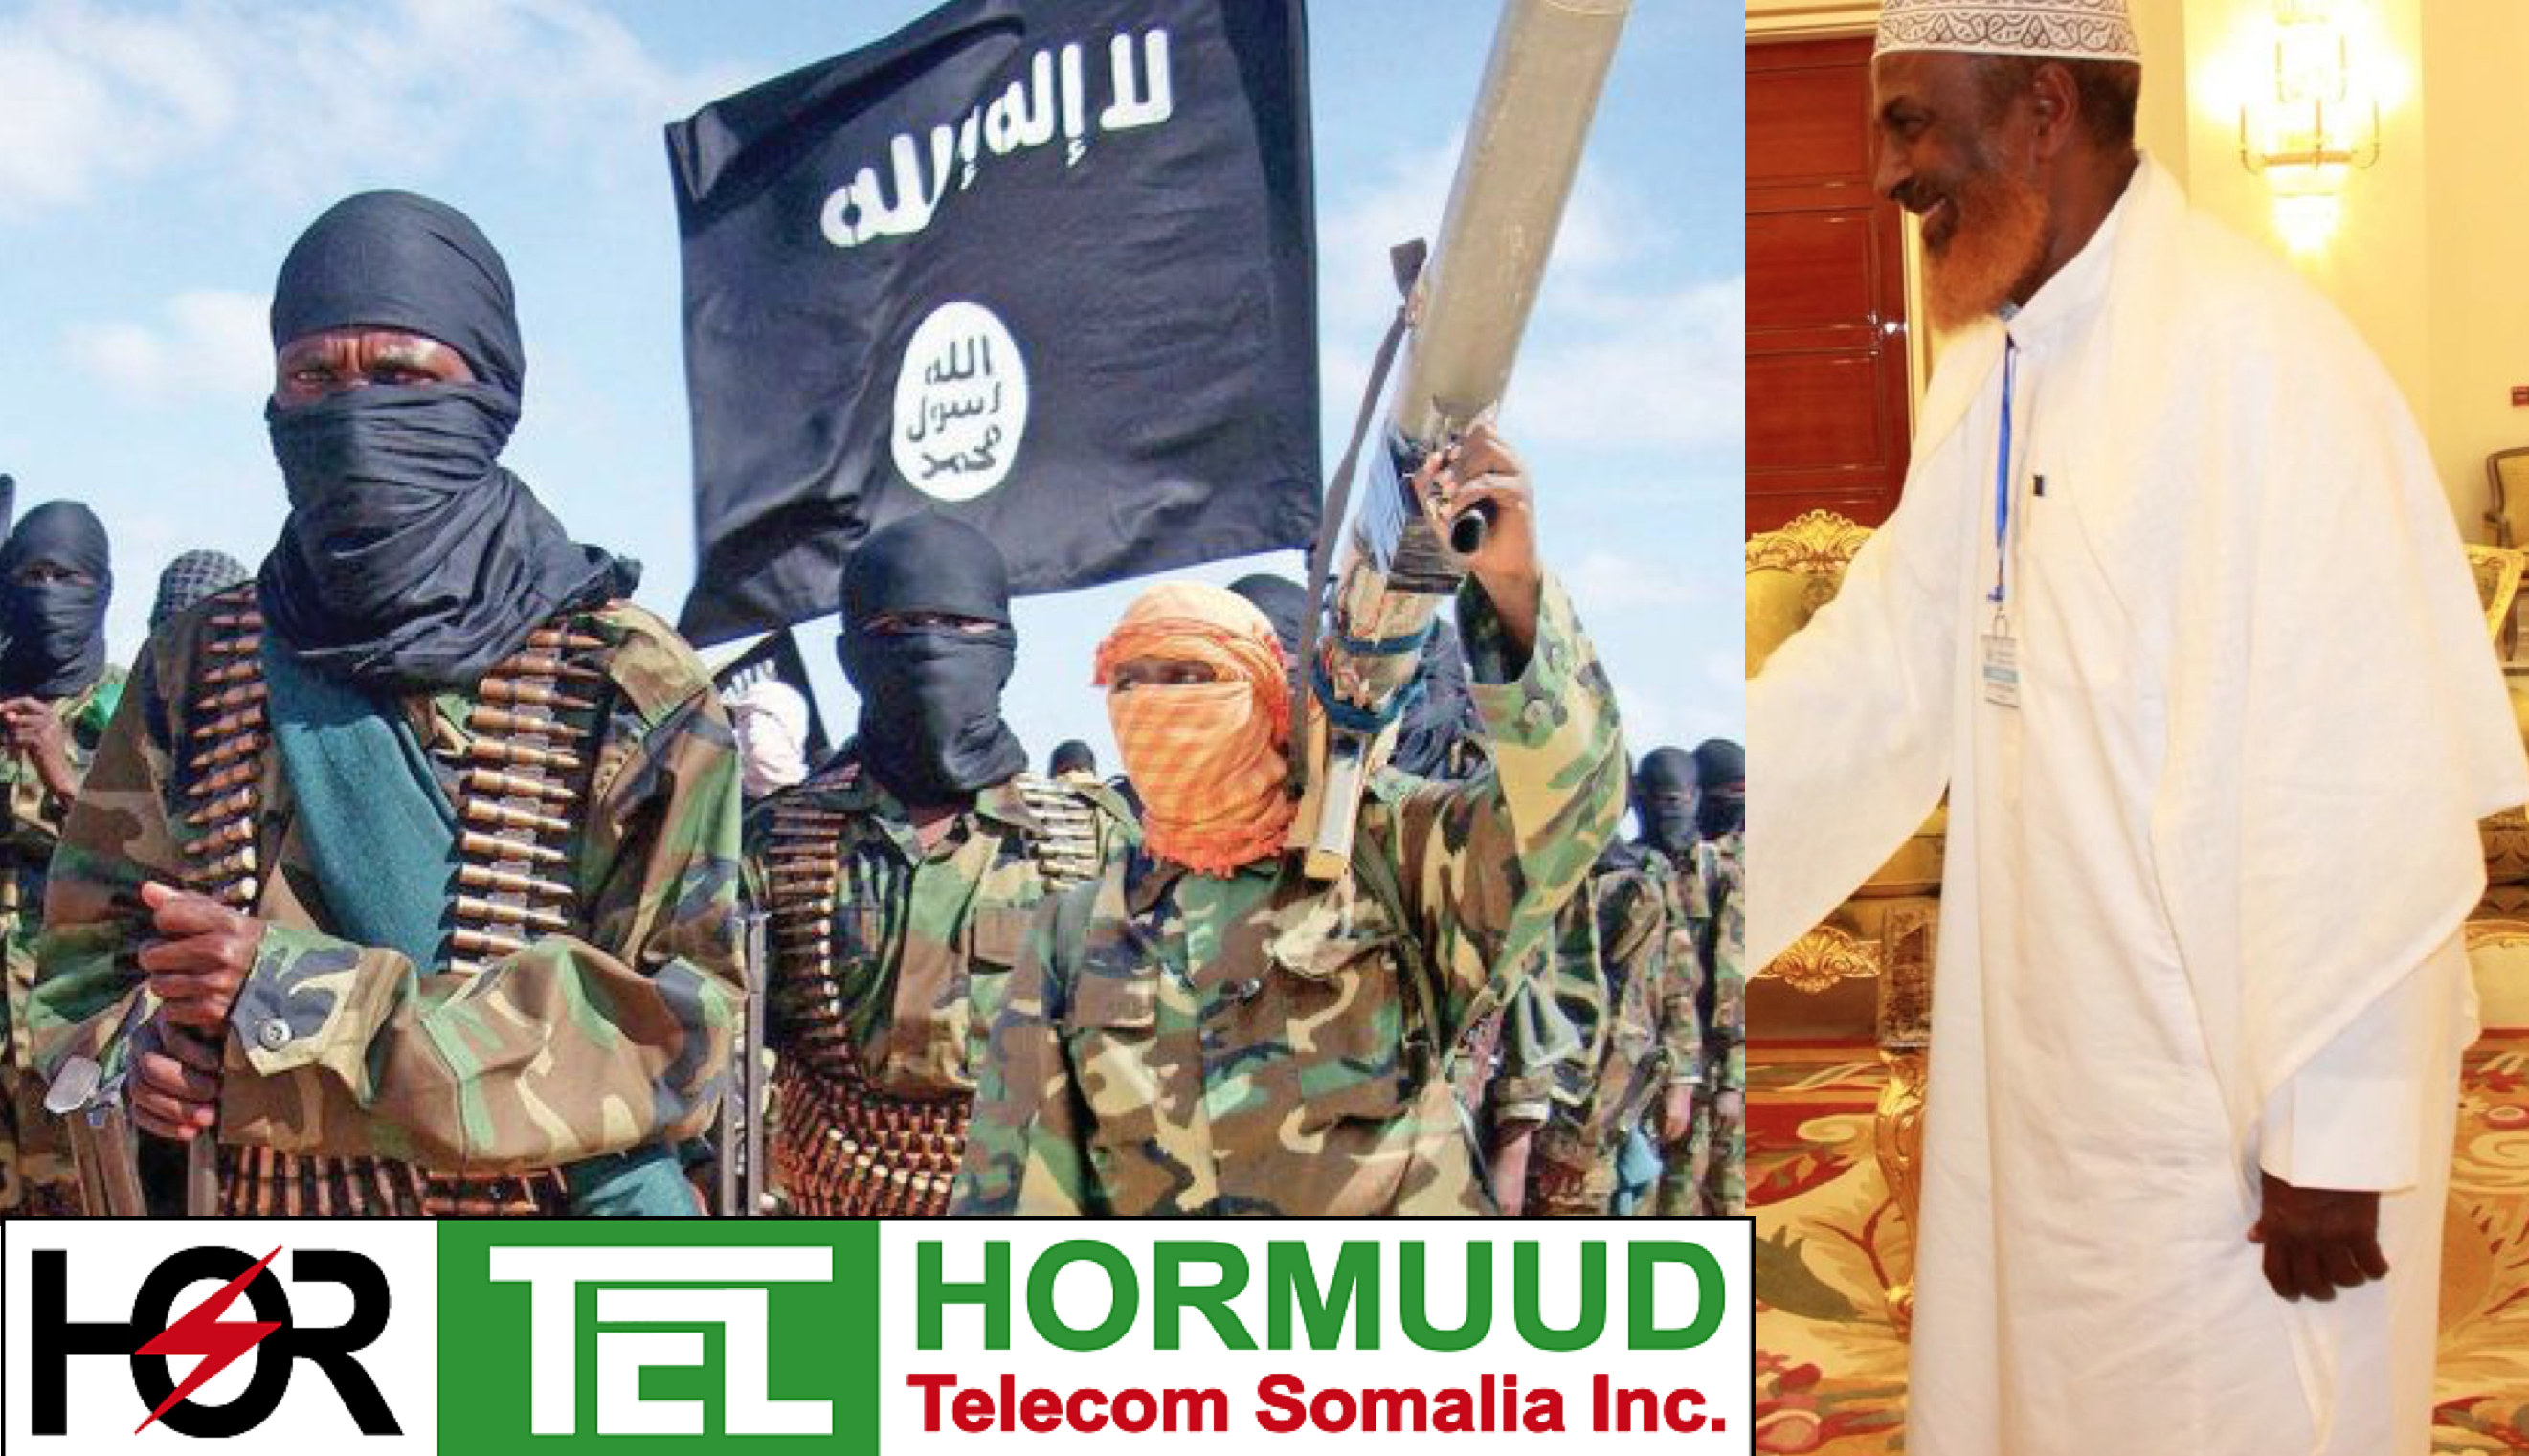 Somalia A Divided Legacy: Hormuud Telecom and Political Islam